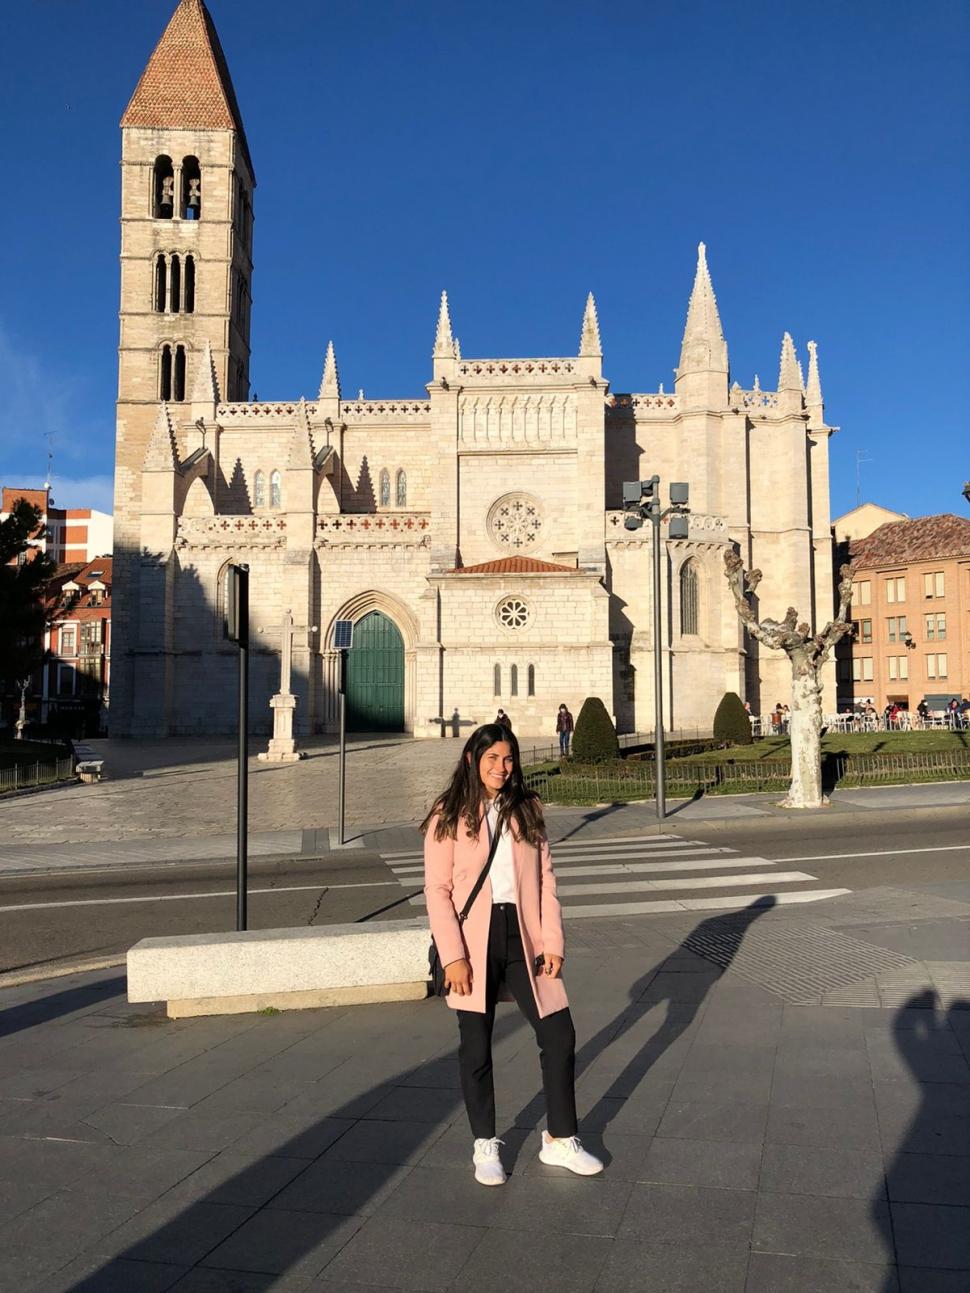 NUEVO ENTORNO. Mayra frente a la Iglesia de Santa María La Antigua, uno de los puntos más retratados de Valladolid. Allí, la sureña espera vivir nuevas experiencias.  